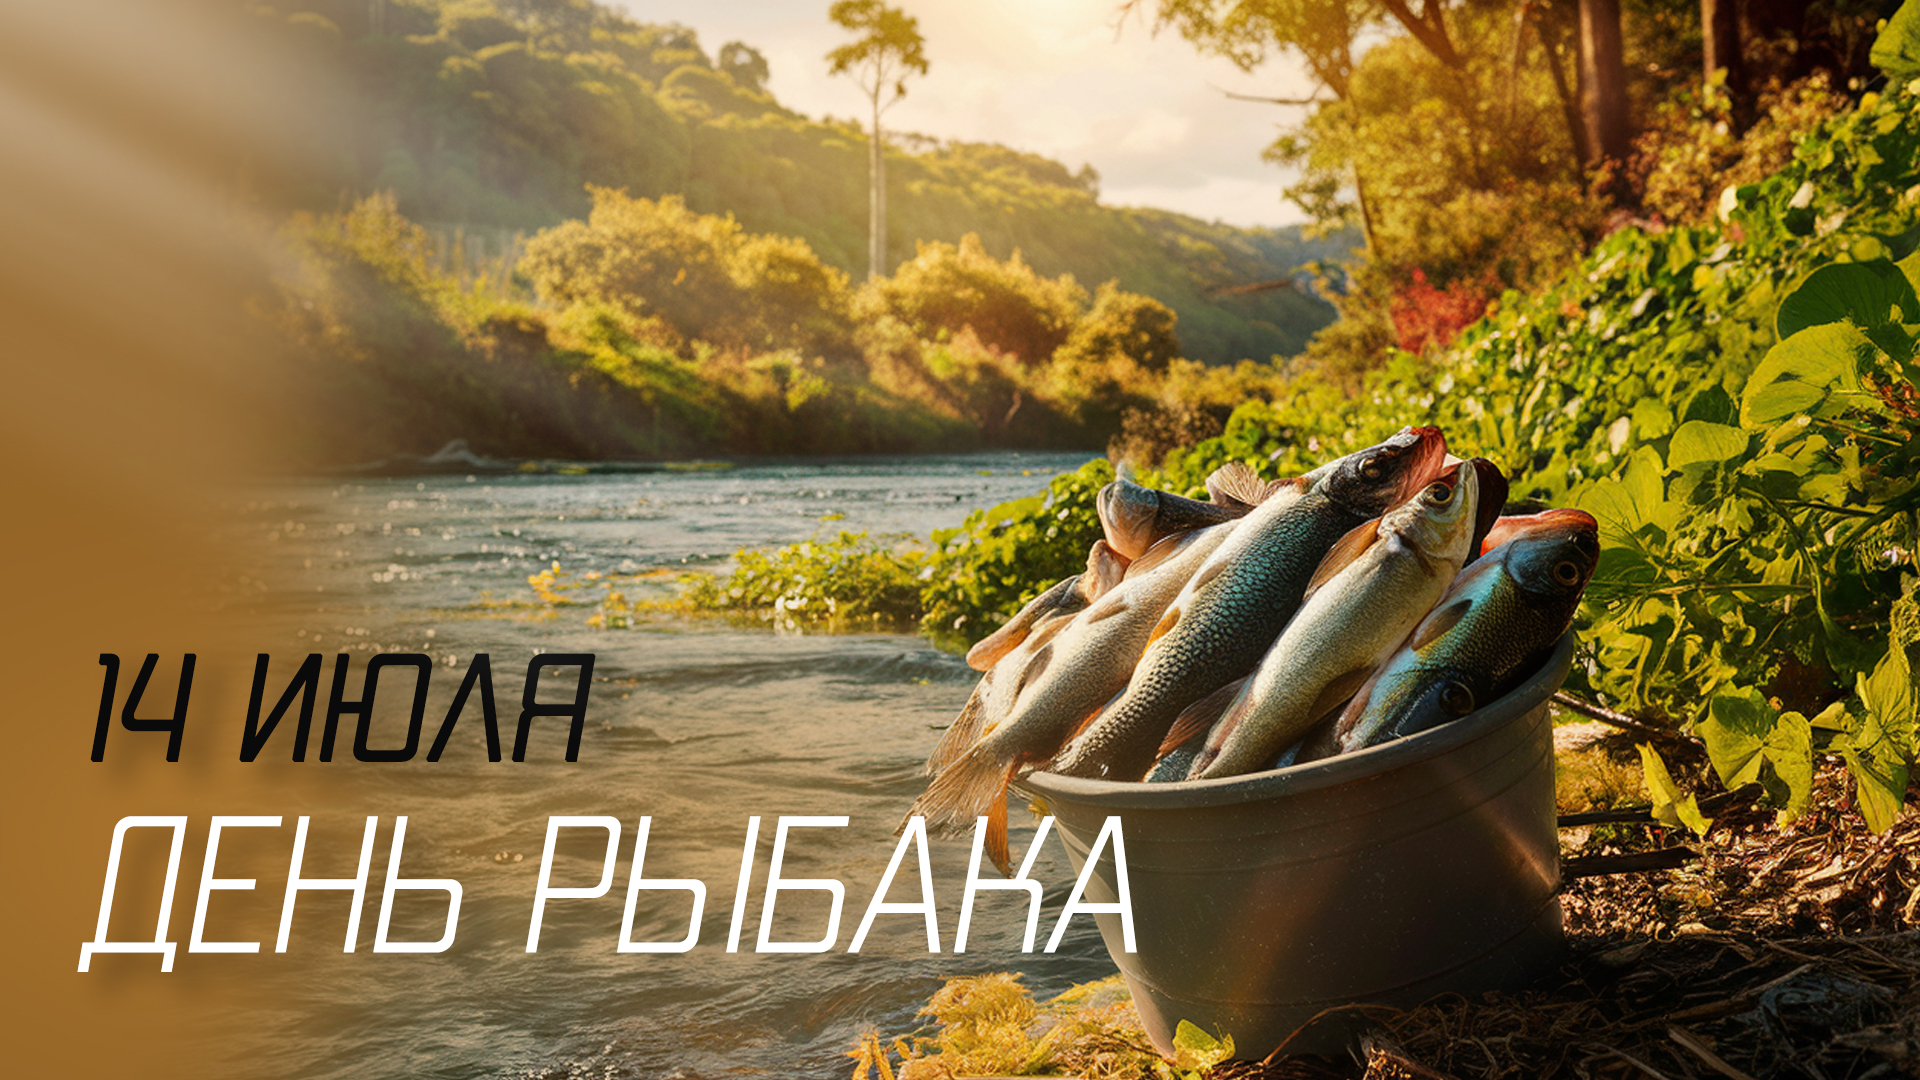 Сегодня, 14 июля, отмечается День рыбака 🎣🐟!🎣...